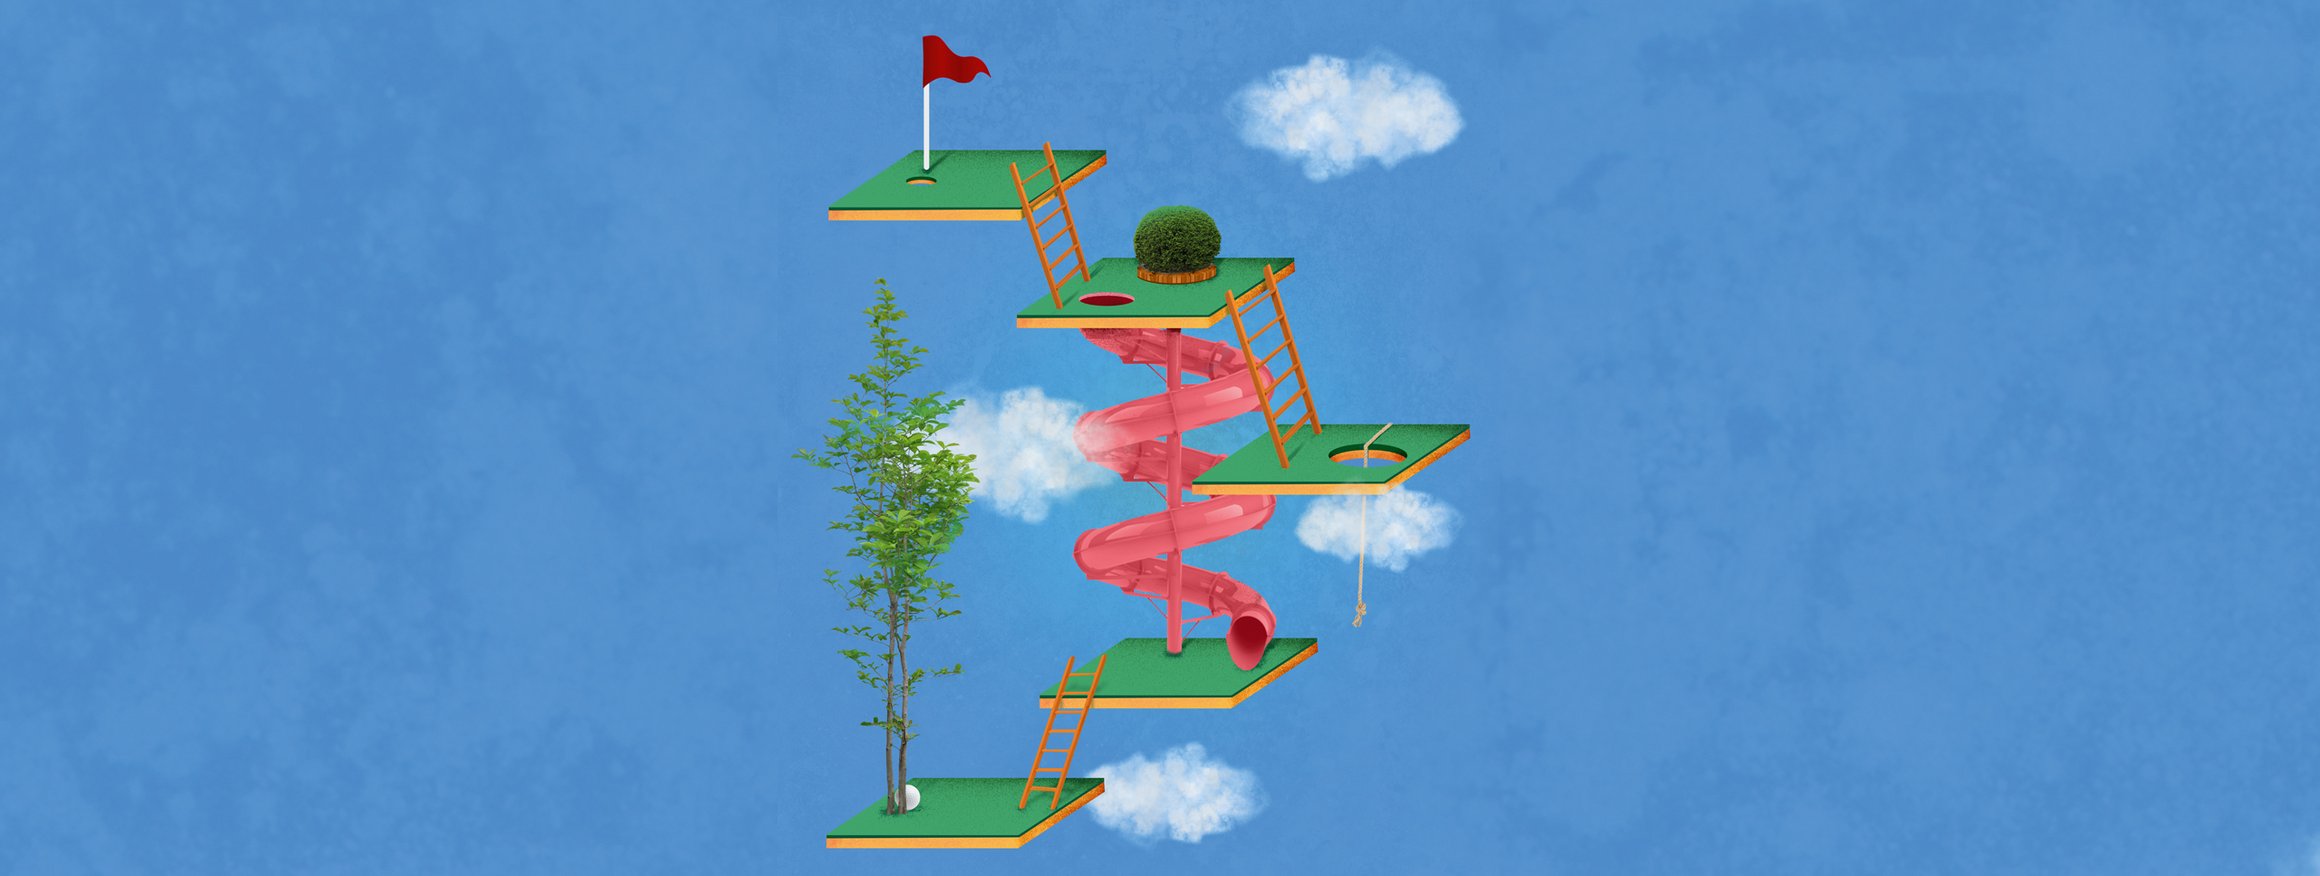 Die Illustration zeigt einen kleinen Golfplatz in Etappen als Stufenleiter, die im Himmel schwebt